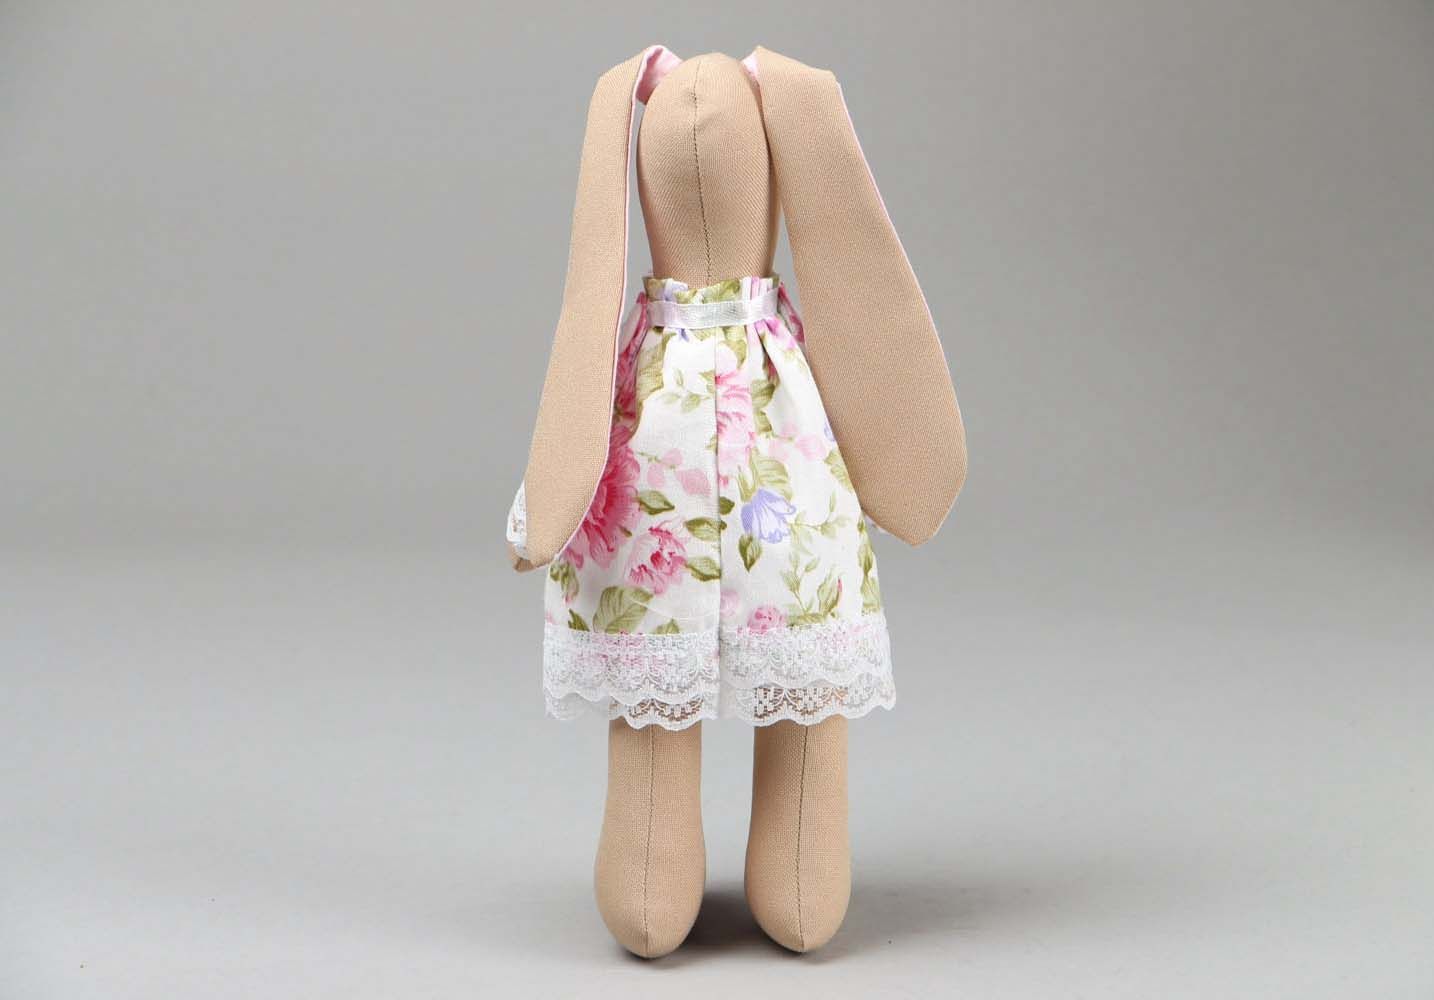 Interieur Puppe im Kleid foto 3